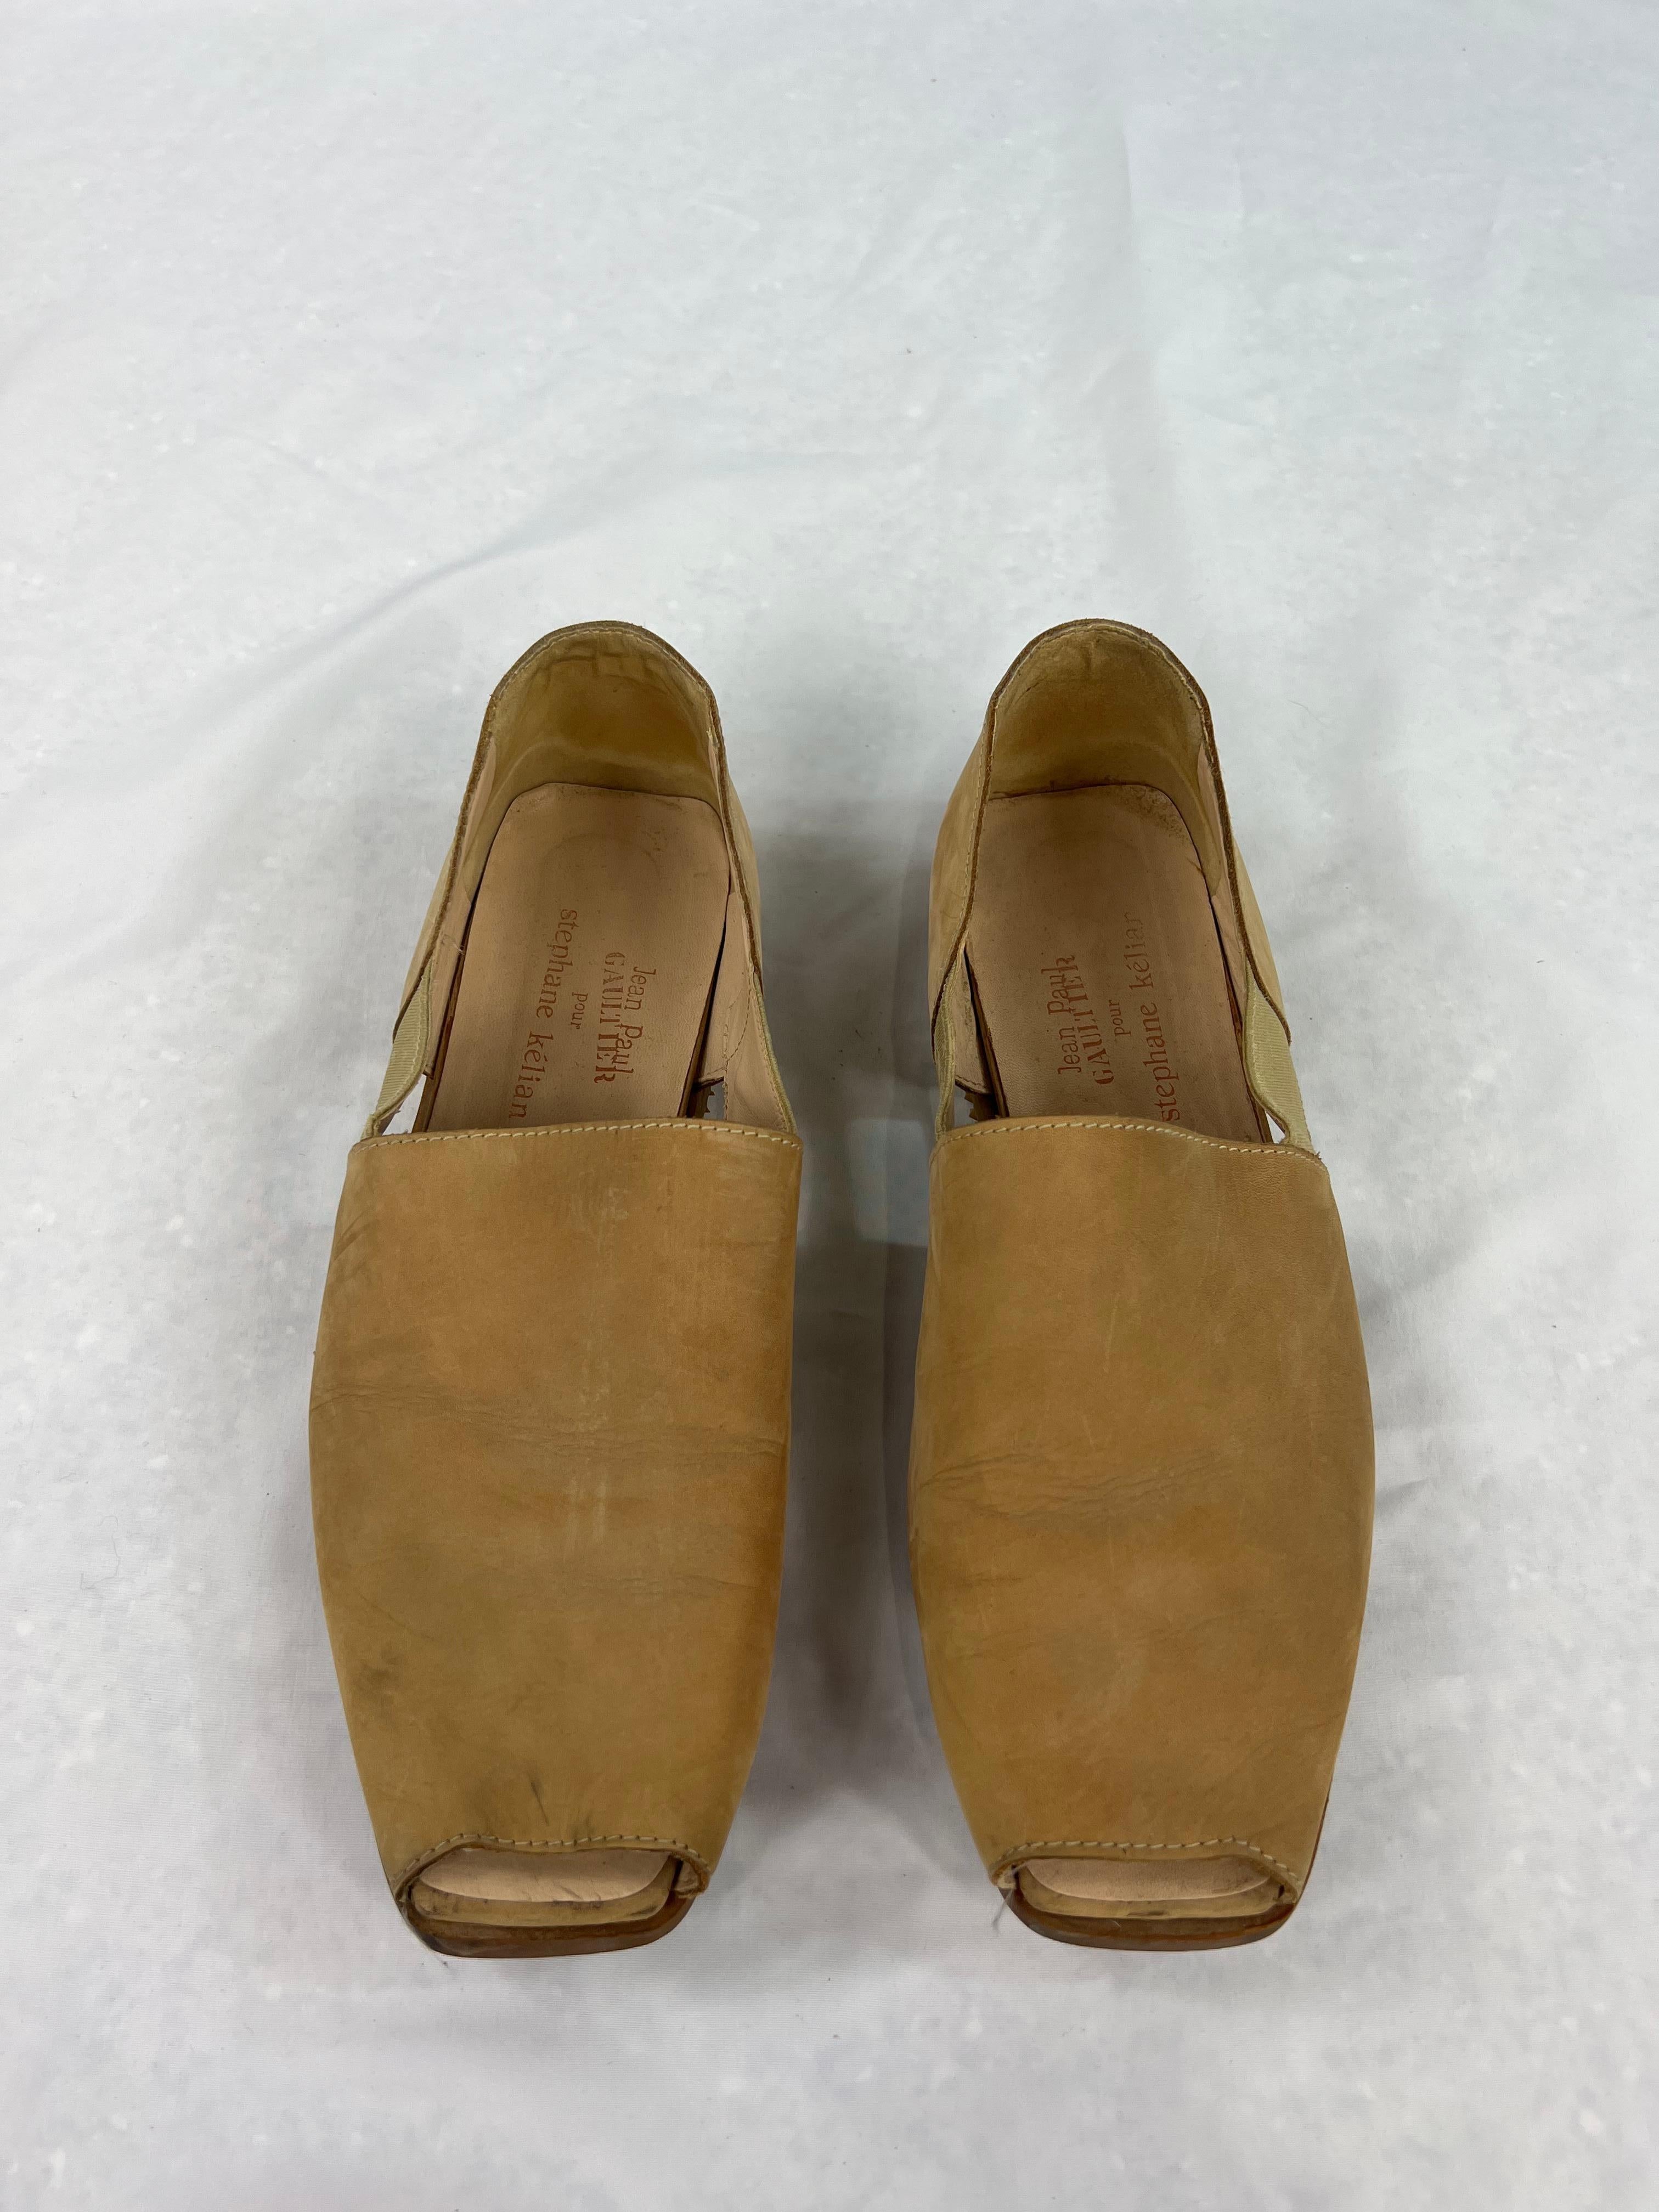 Détails du produit :

Ces chaussures sont de couleur camel/beige, à bout ouvert avec un détail élastique sur le côté et de style plat.